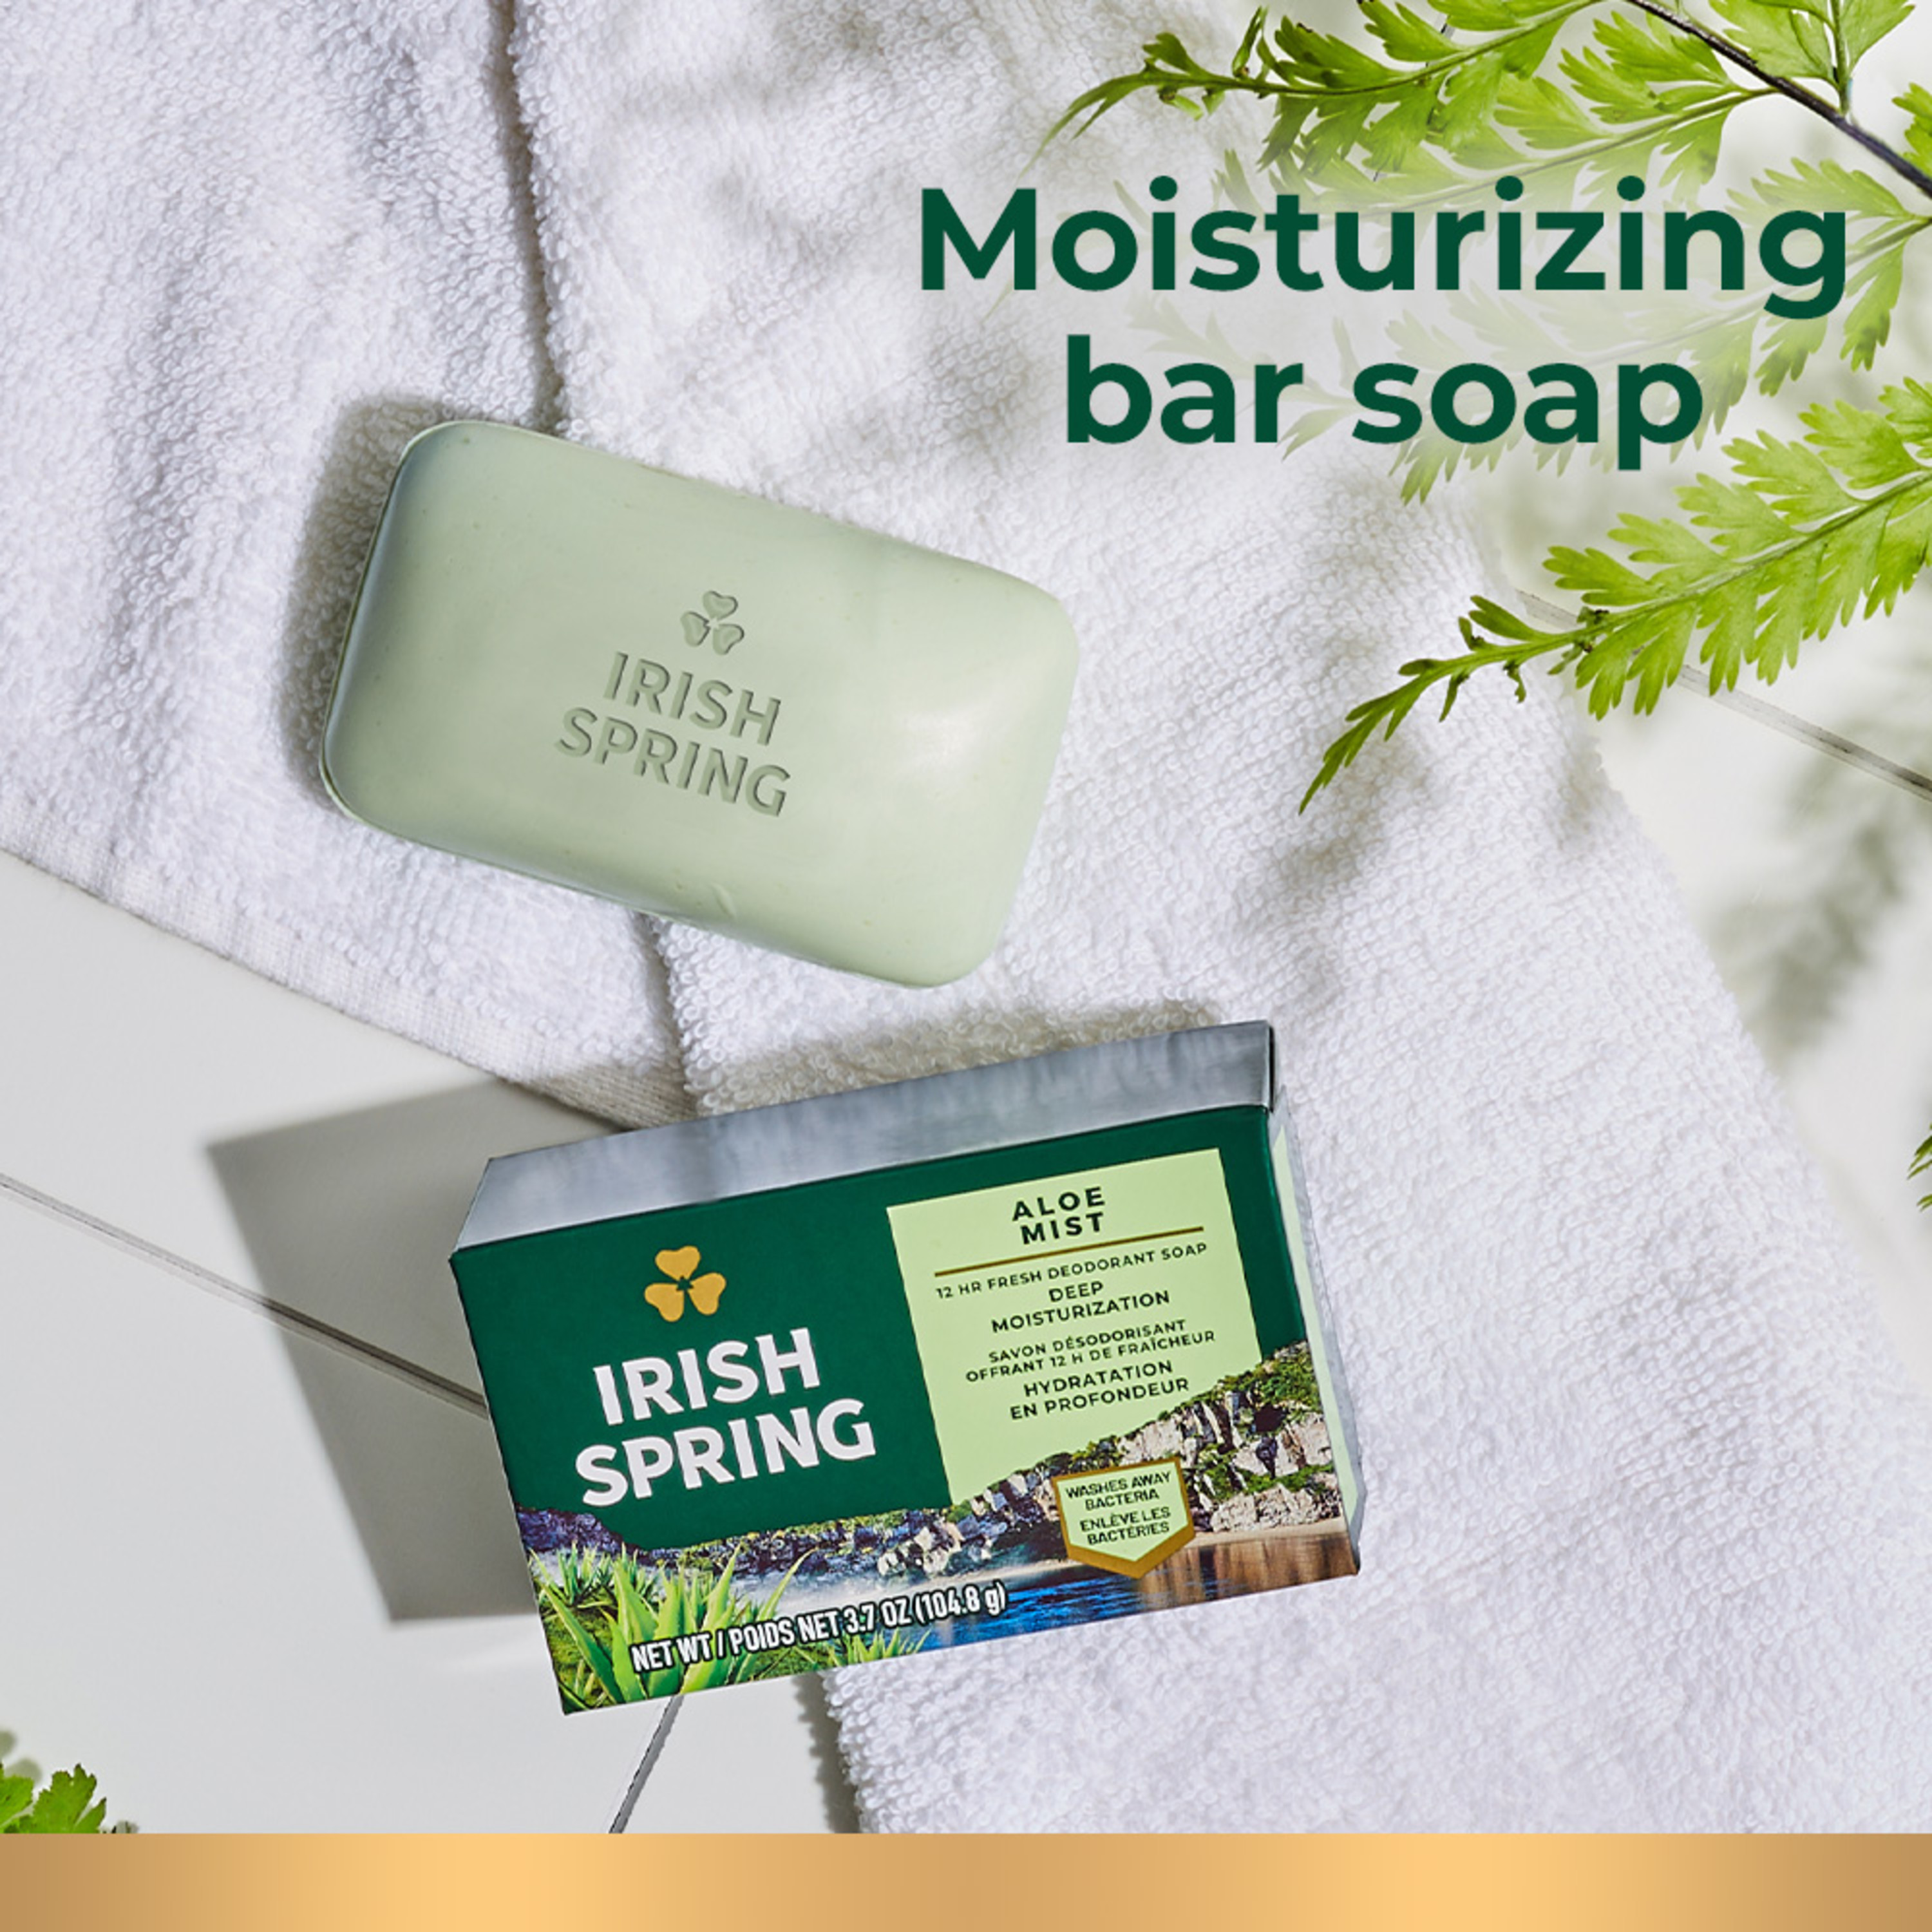 Irish Spring Aloe Mist Deodorant Bar Soap for Men, Feel Fresh All Day, 3.7 oz, 12 Pack - image 10 of 23